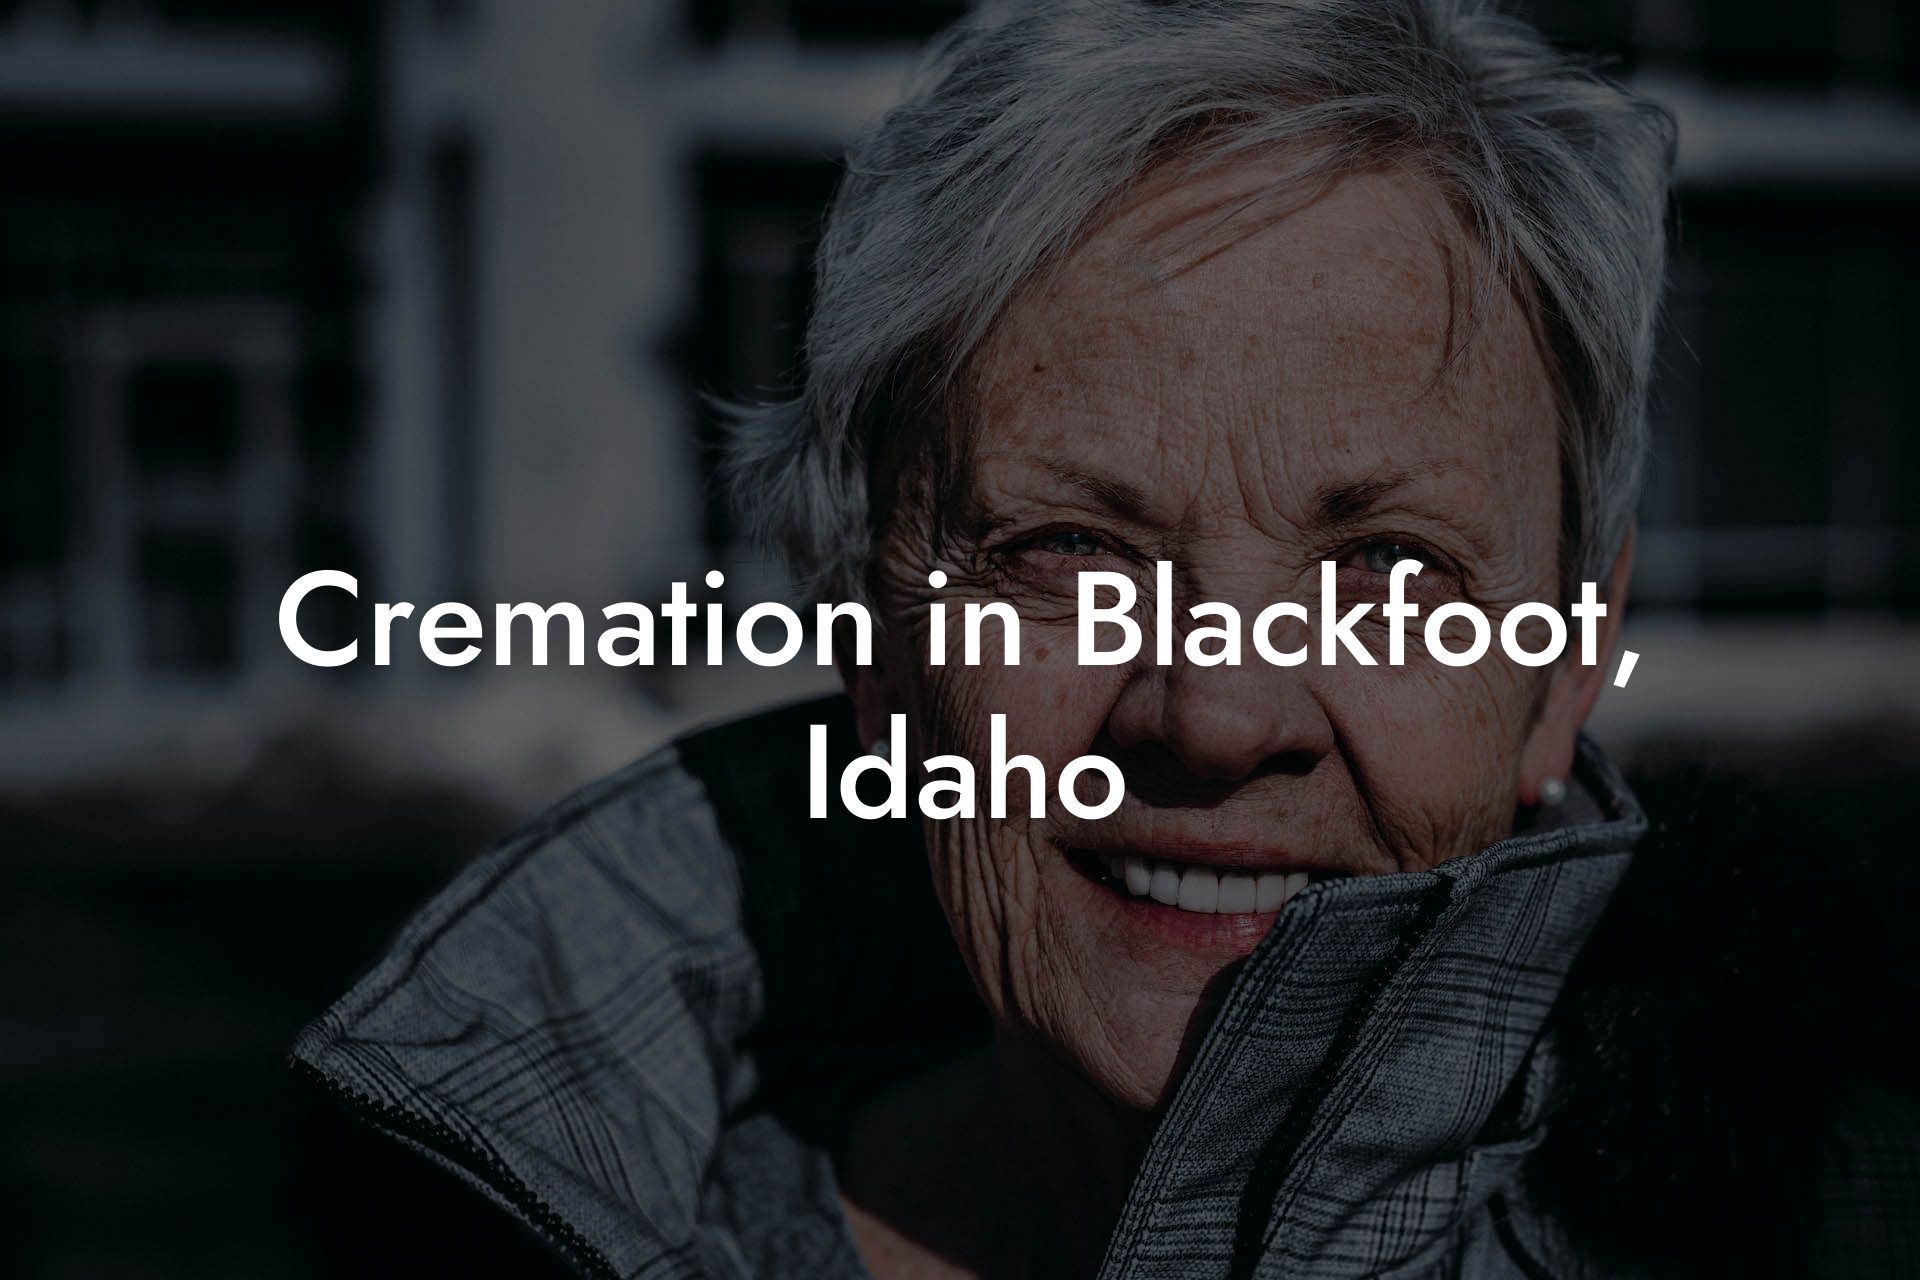 Cremation in Blackfoot, Idaho